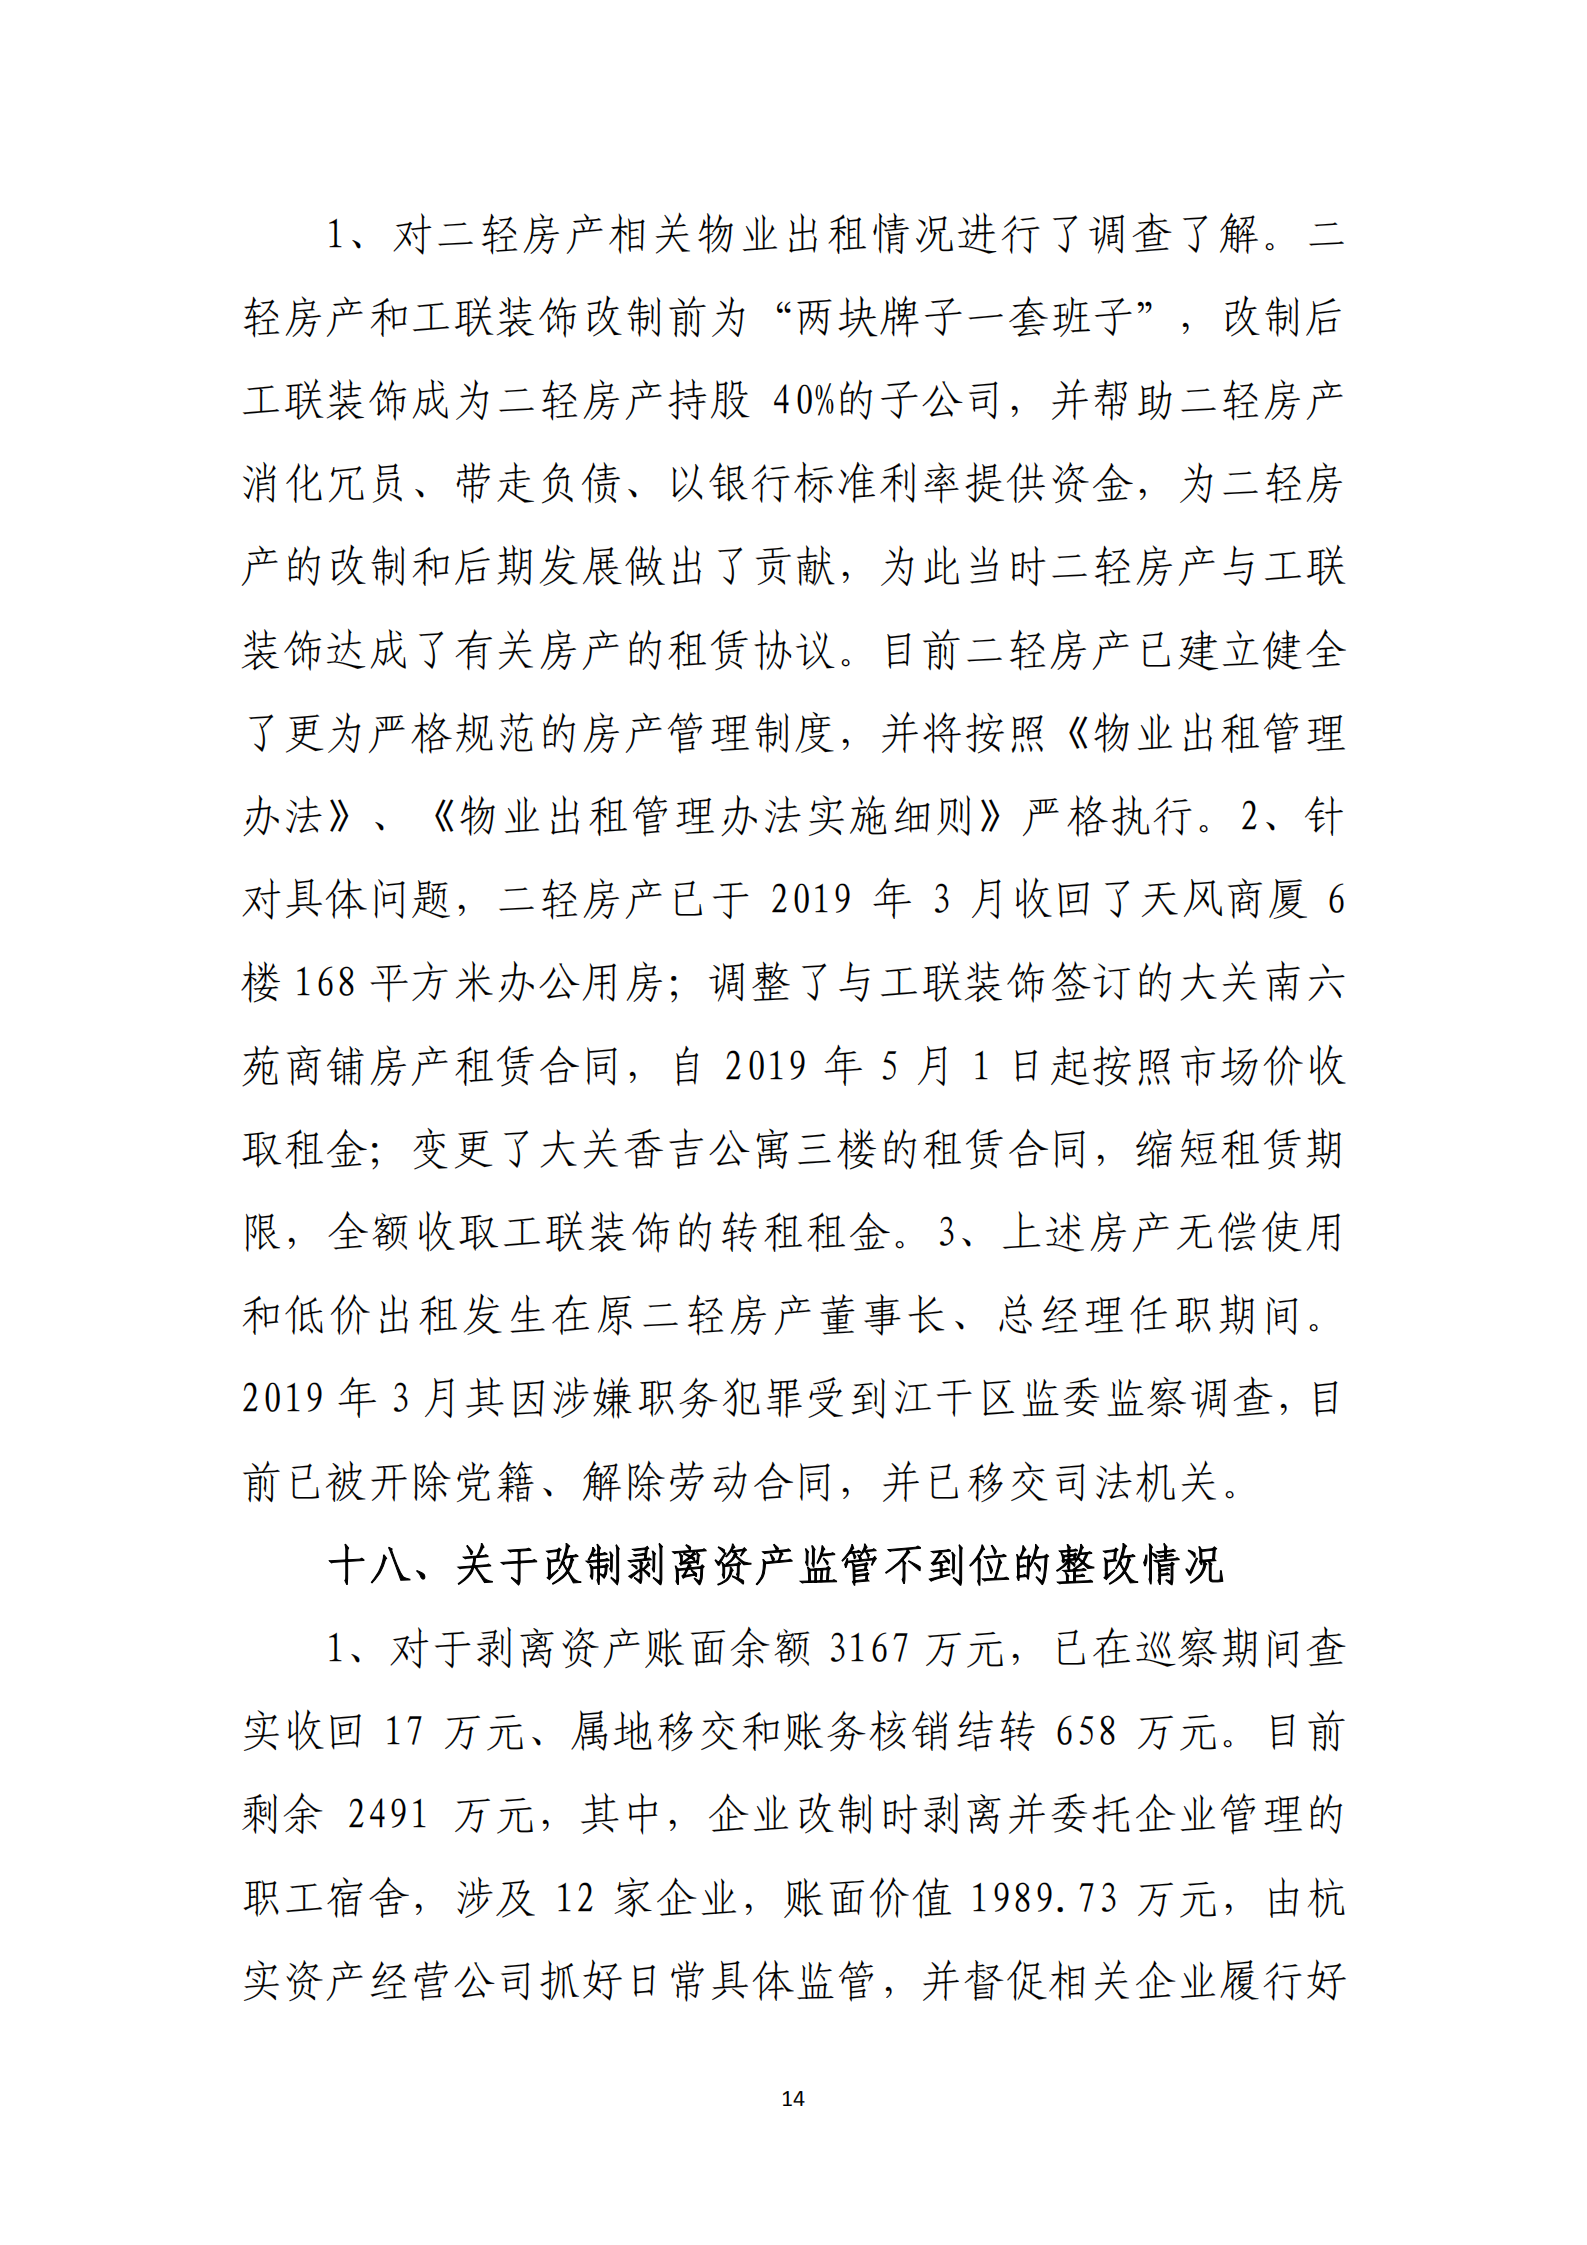 乐虎国际游戏官网党委关于巡察整改情况的通报_13.png